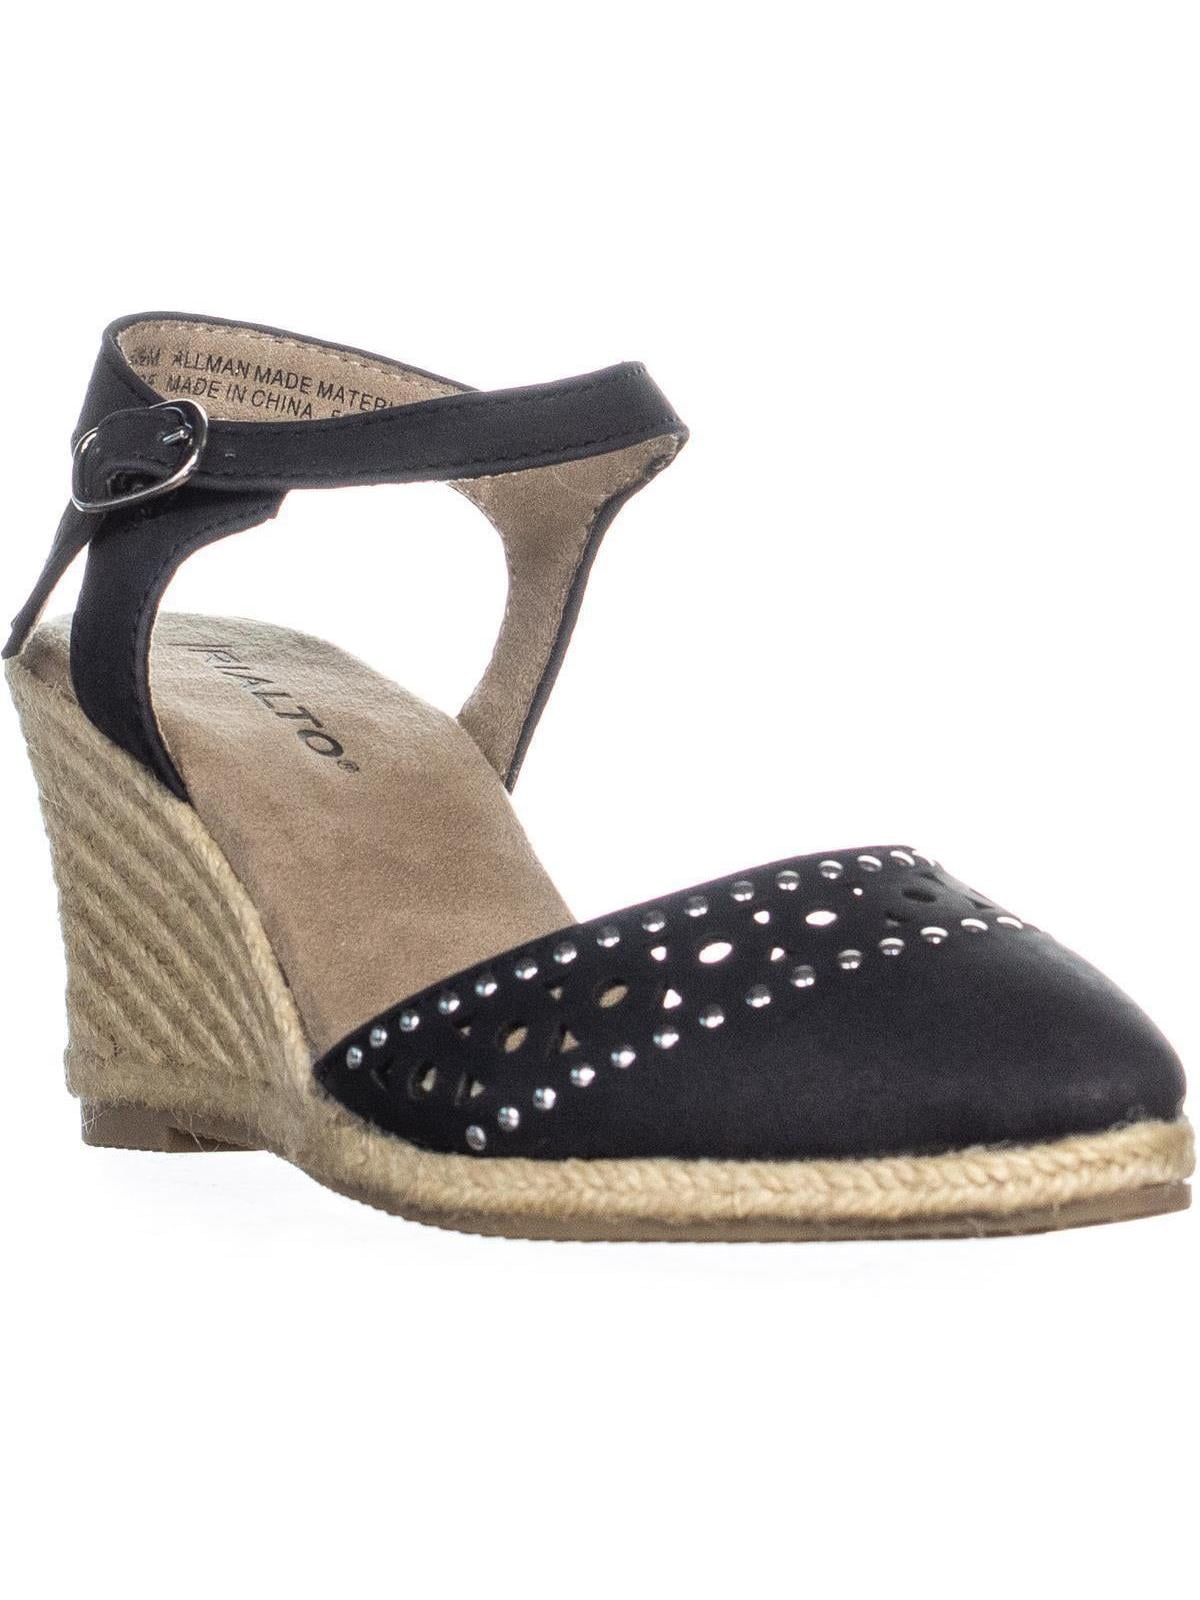 rialto sandals for ladies